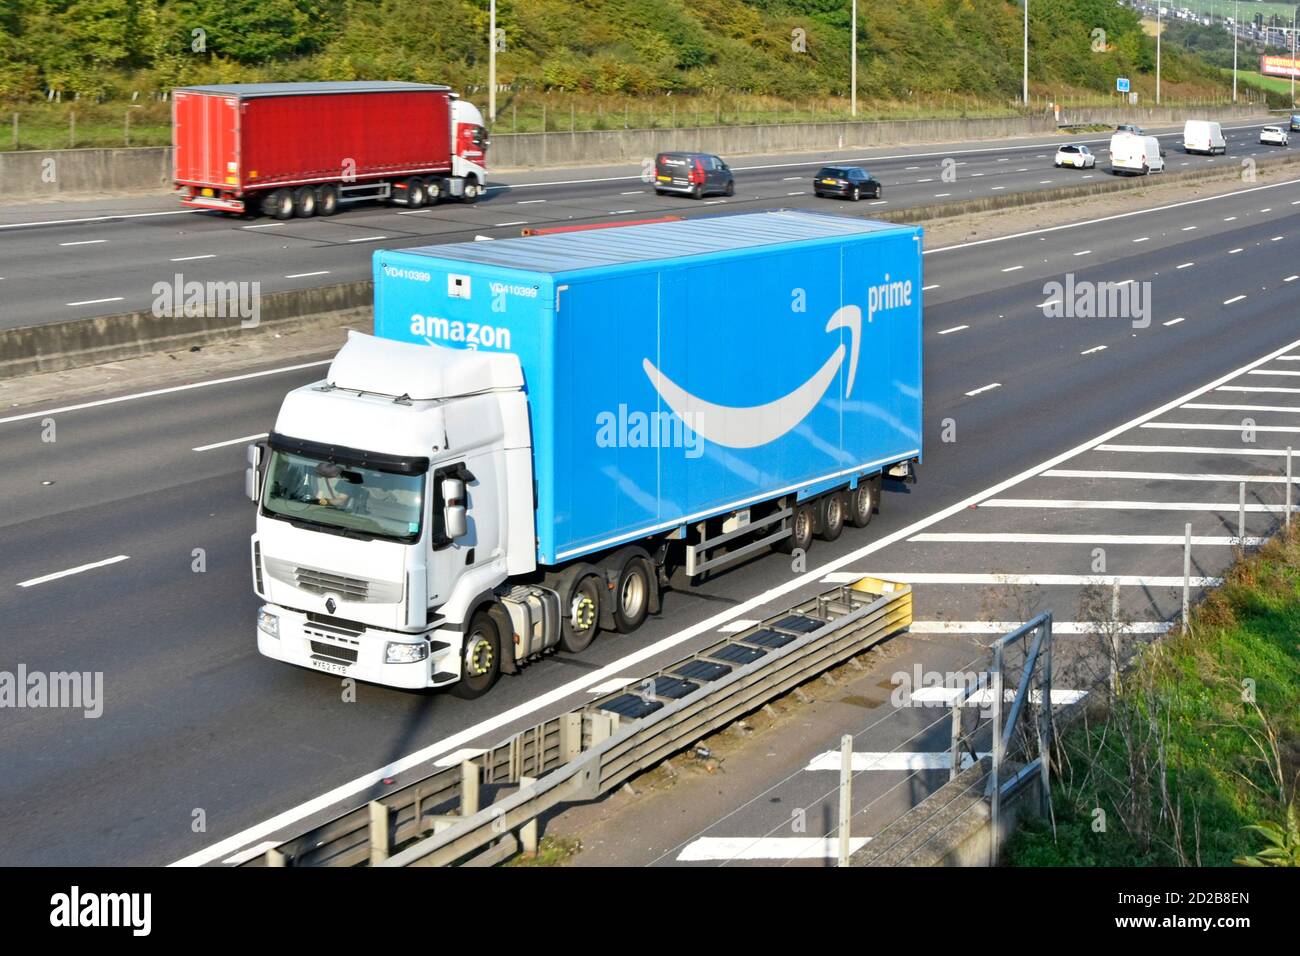 LKW Transport Logistik LKW LKW & blau Sattelanhänger Werbung Amazon  Online-Shopping Prime Marke Logo Einzelhandel Geschäft fahren  Großbritannien Autobahn Stockfotografie - Alamy